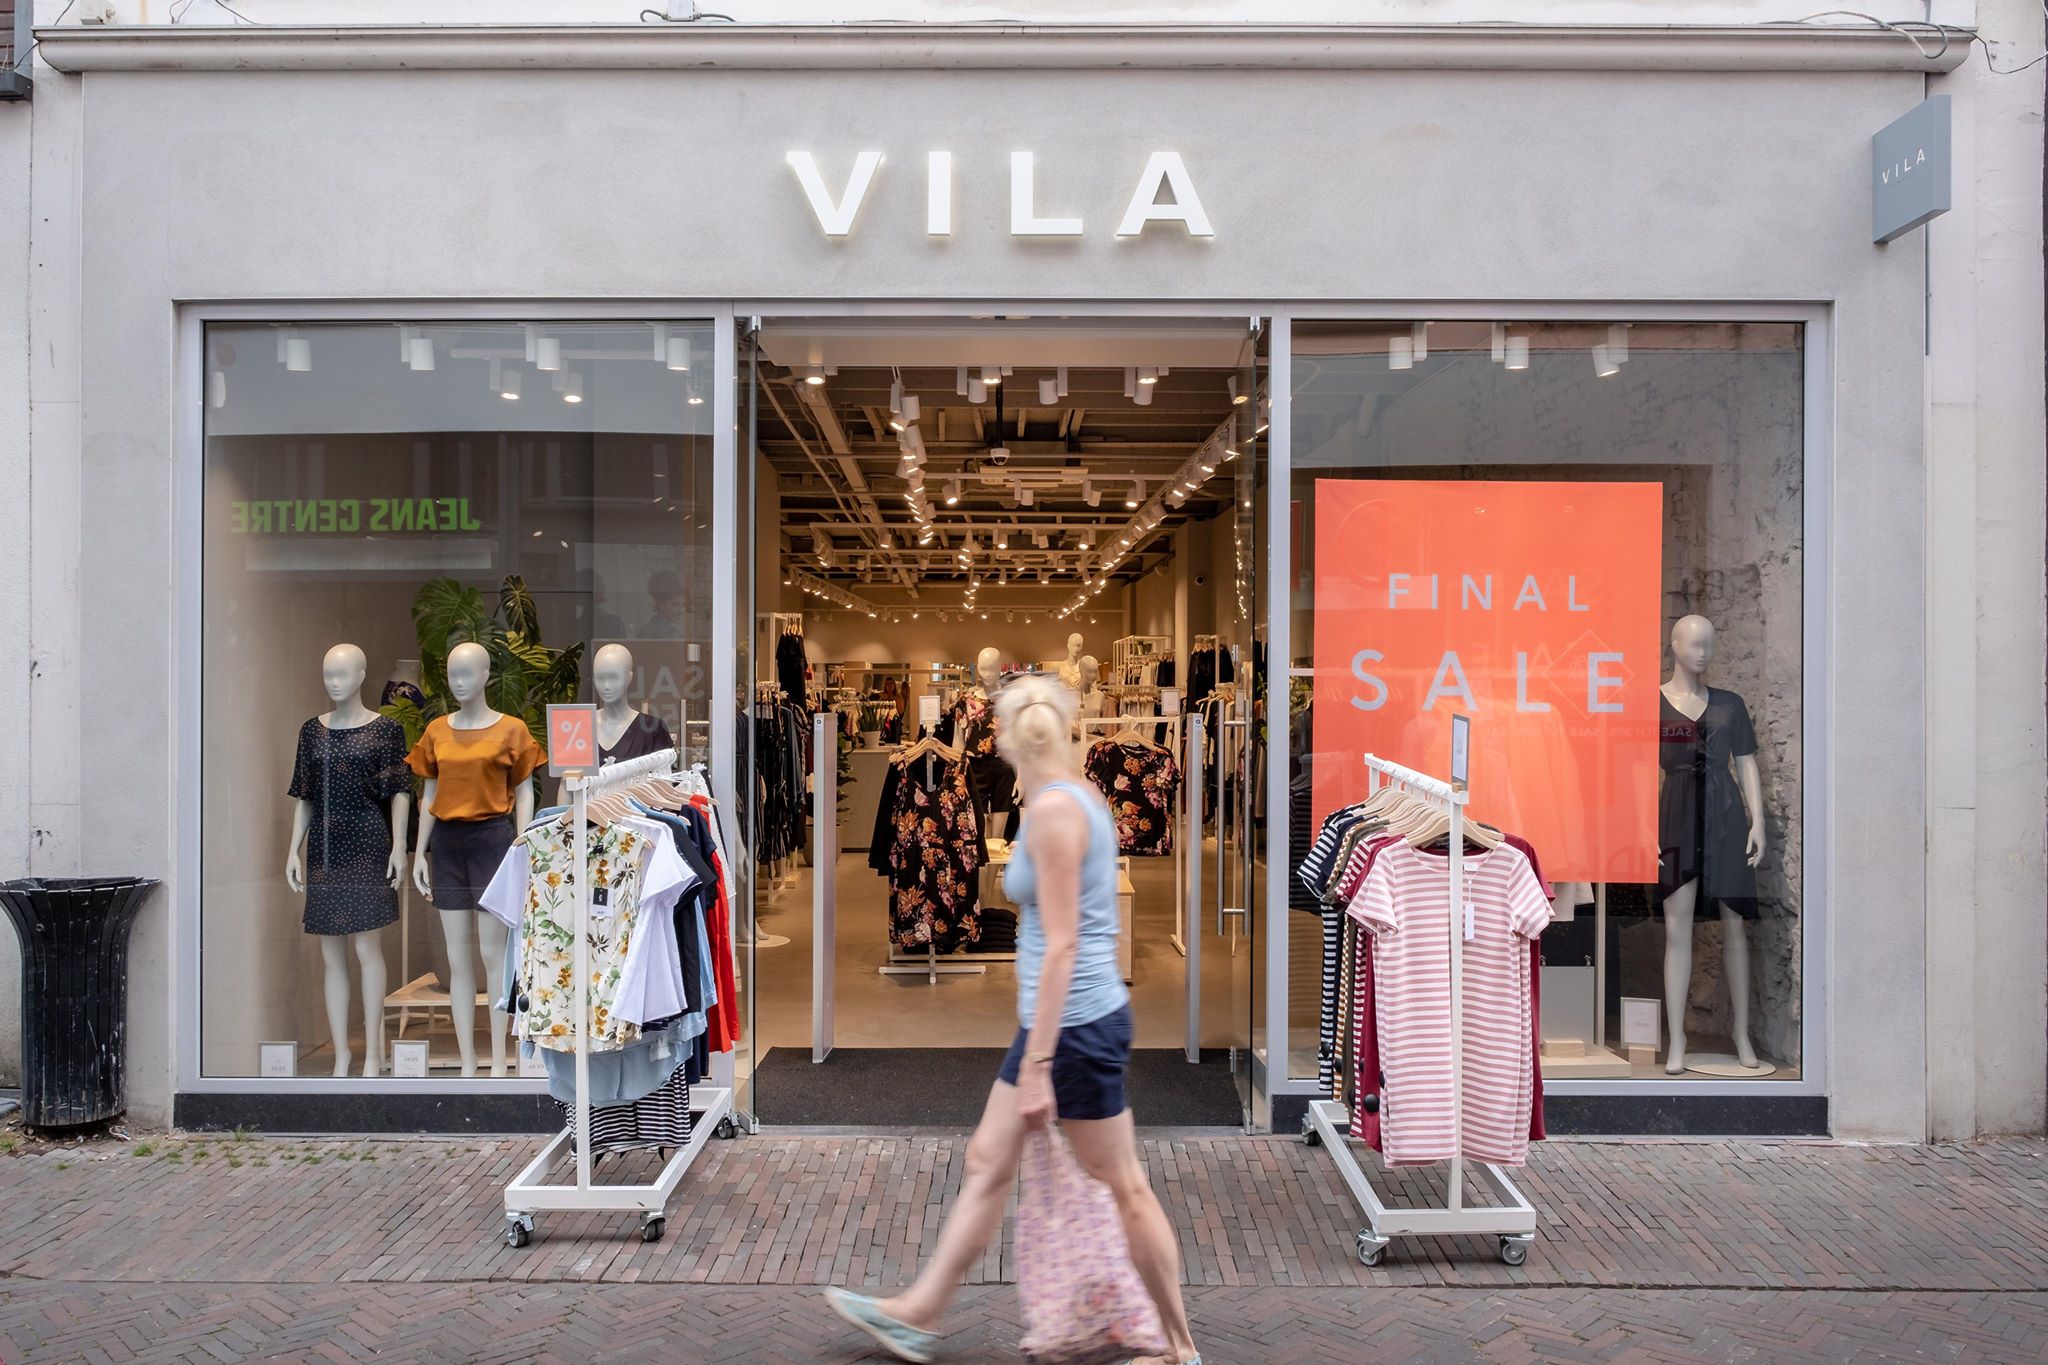 Vila en meer winkels in Deventer vind je bij Shoppen in Deventer